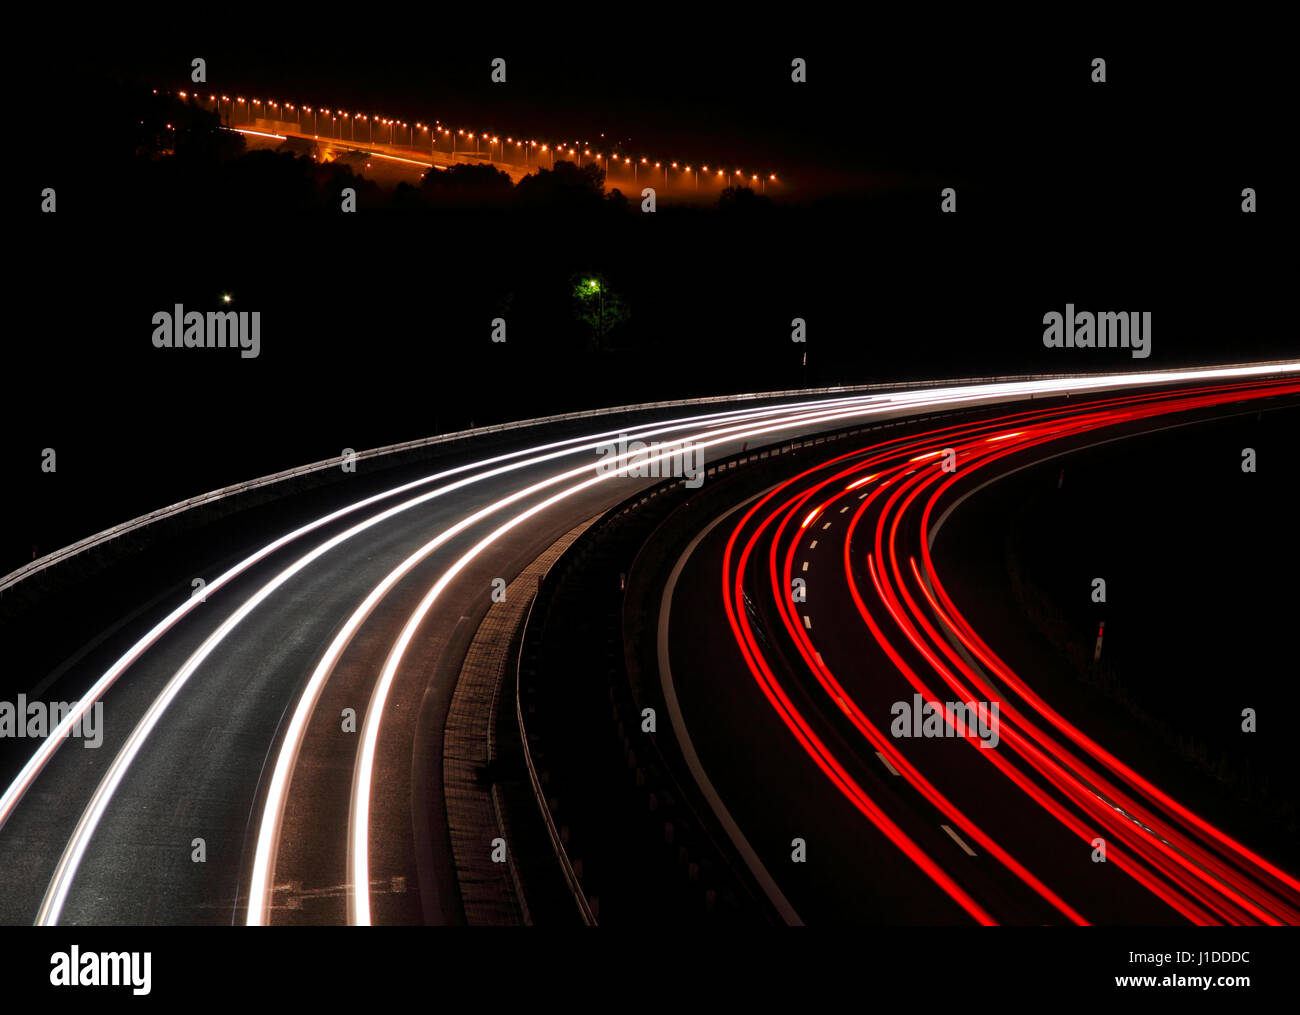 Highway with car lights trails at night. Poland, Swietokrzyskie. Stock Photo